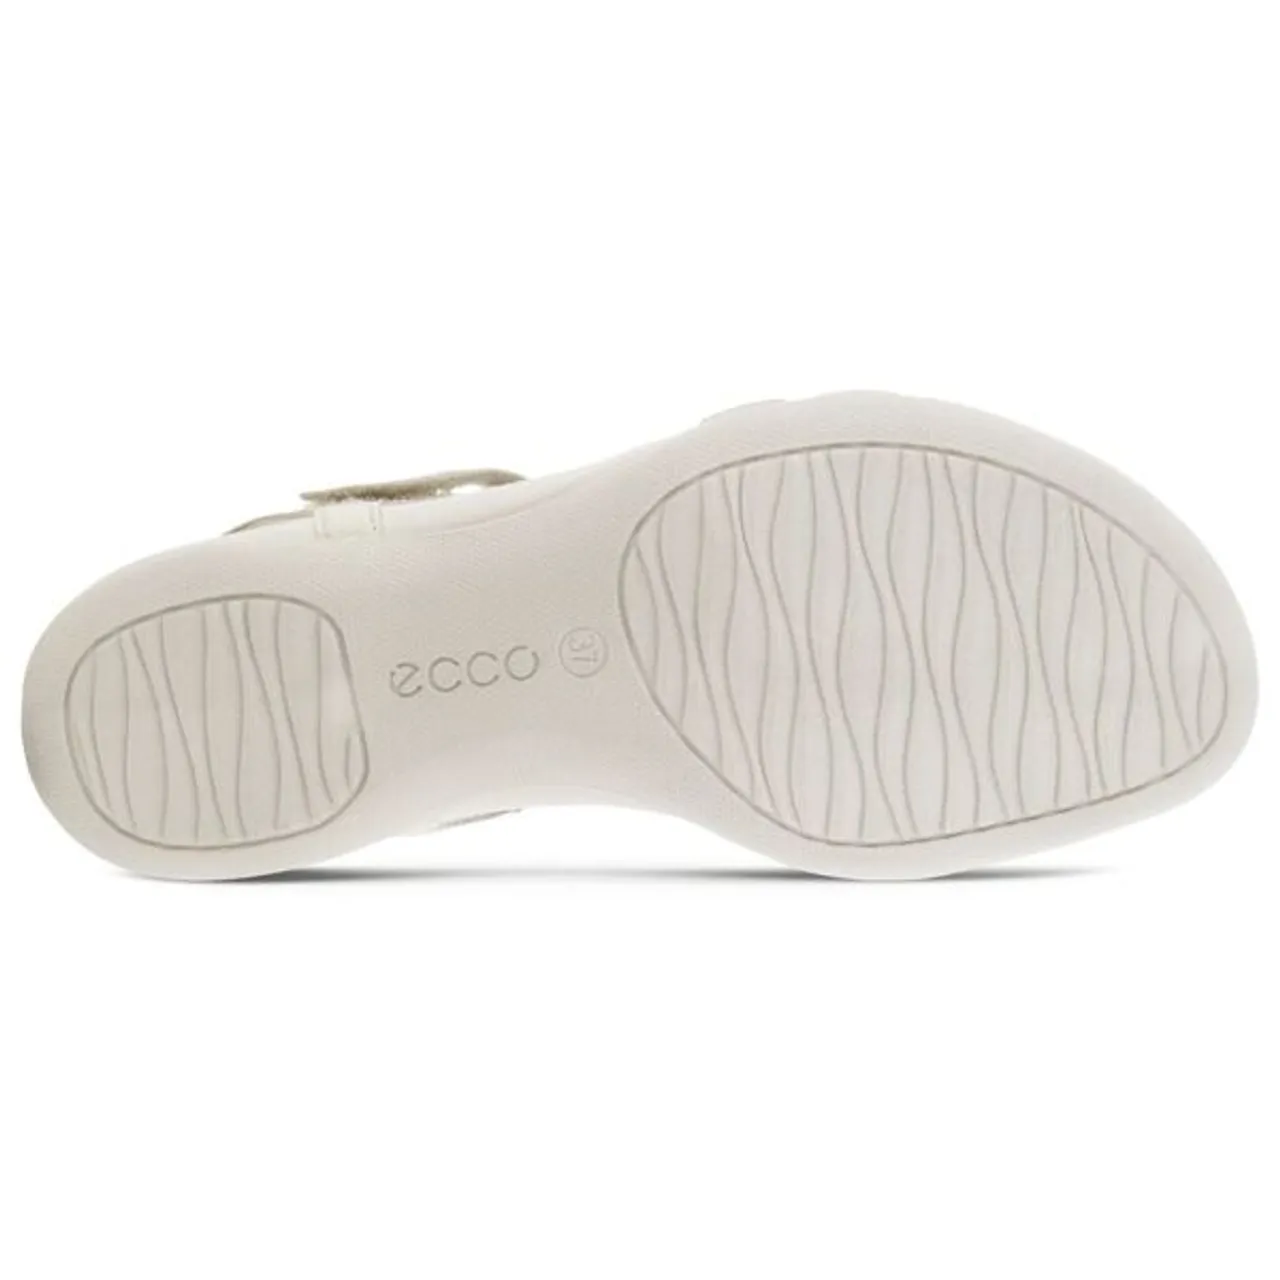 Riemchensandale ECCO "FLASH" Gr. 40, weiß (weiß, beige) Damen Schuhe Sandalen